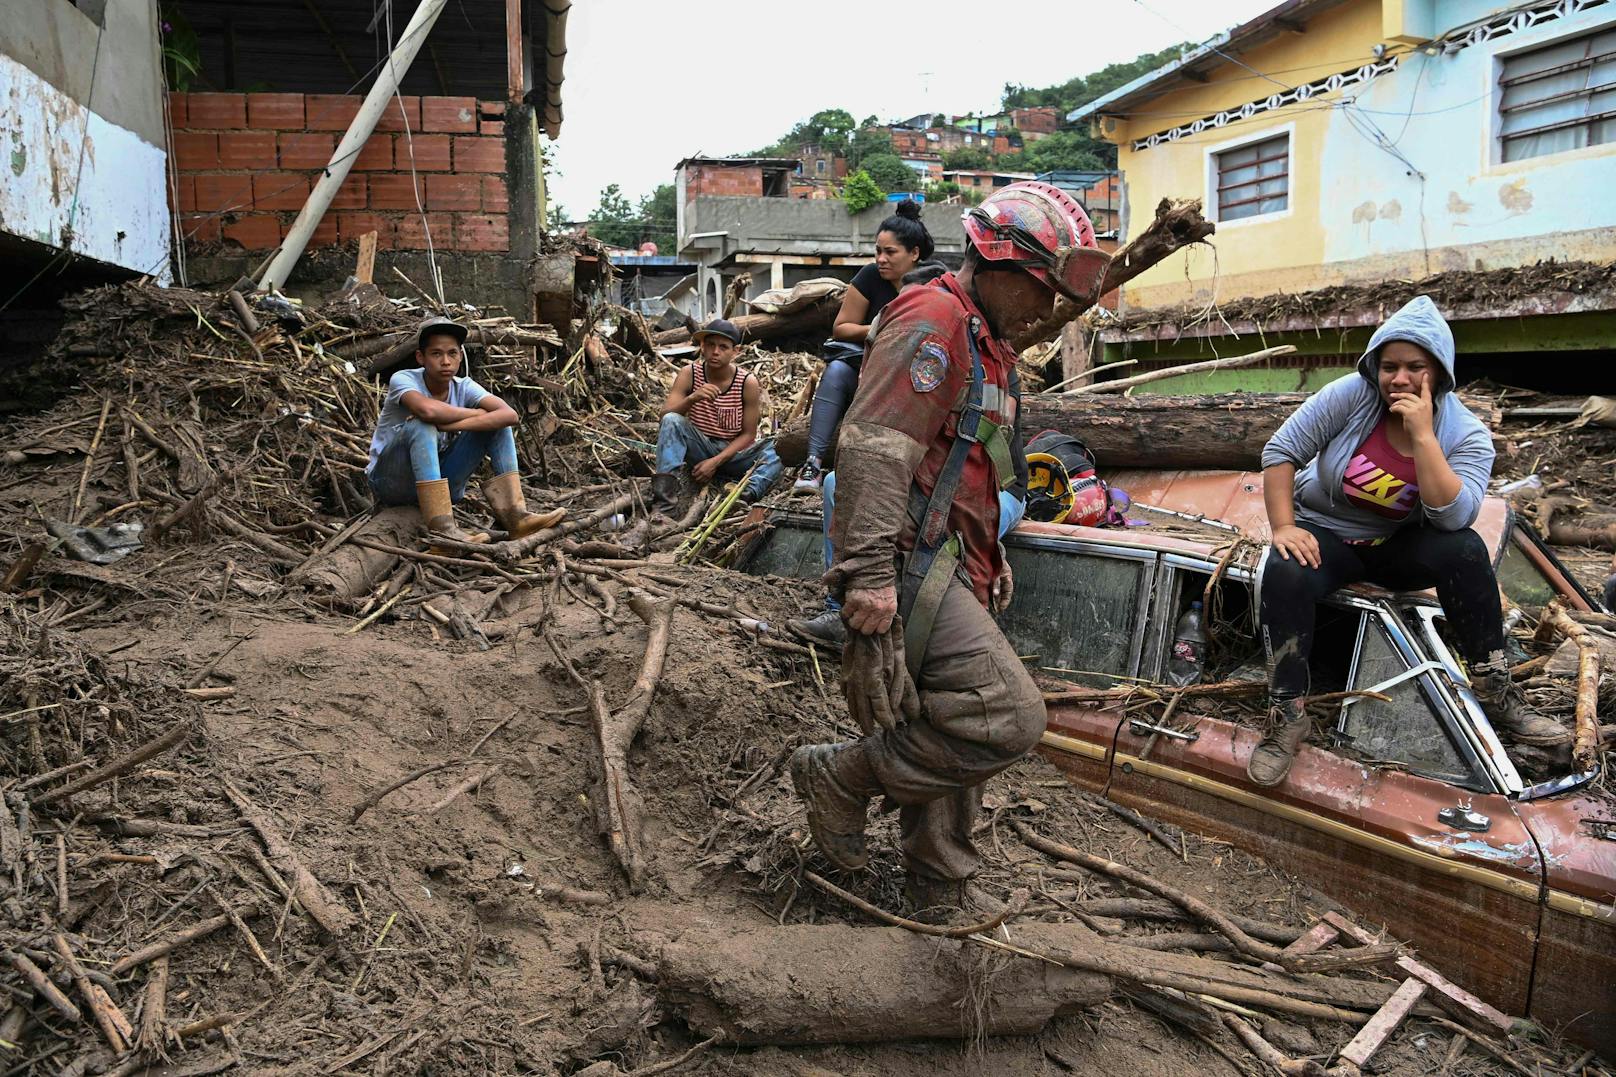 Ein Erdrutsch in Venezuela hat mindestens 22 Menschenleben gefordert. Nach wie vor werden zahlreiche Menschen vermisst.